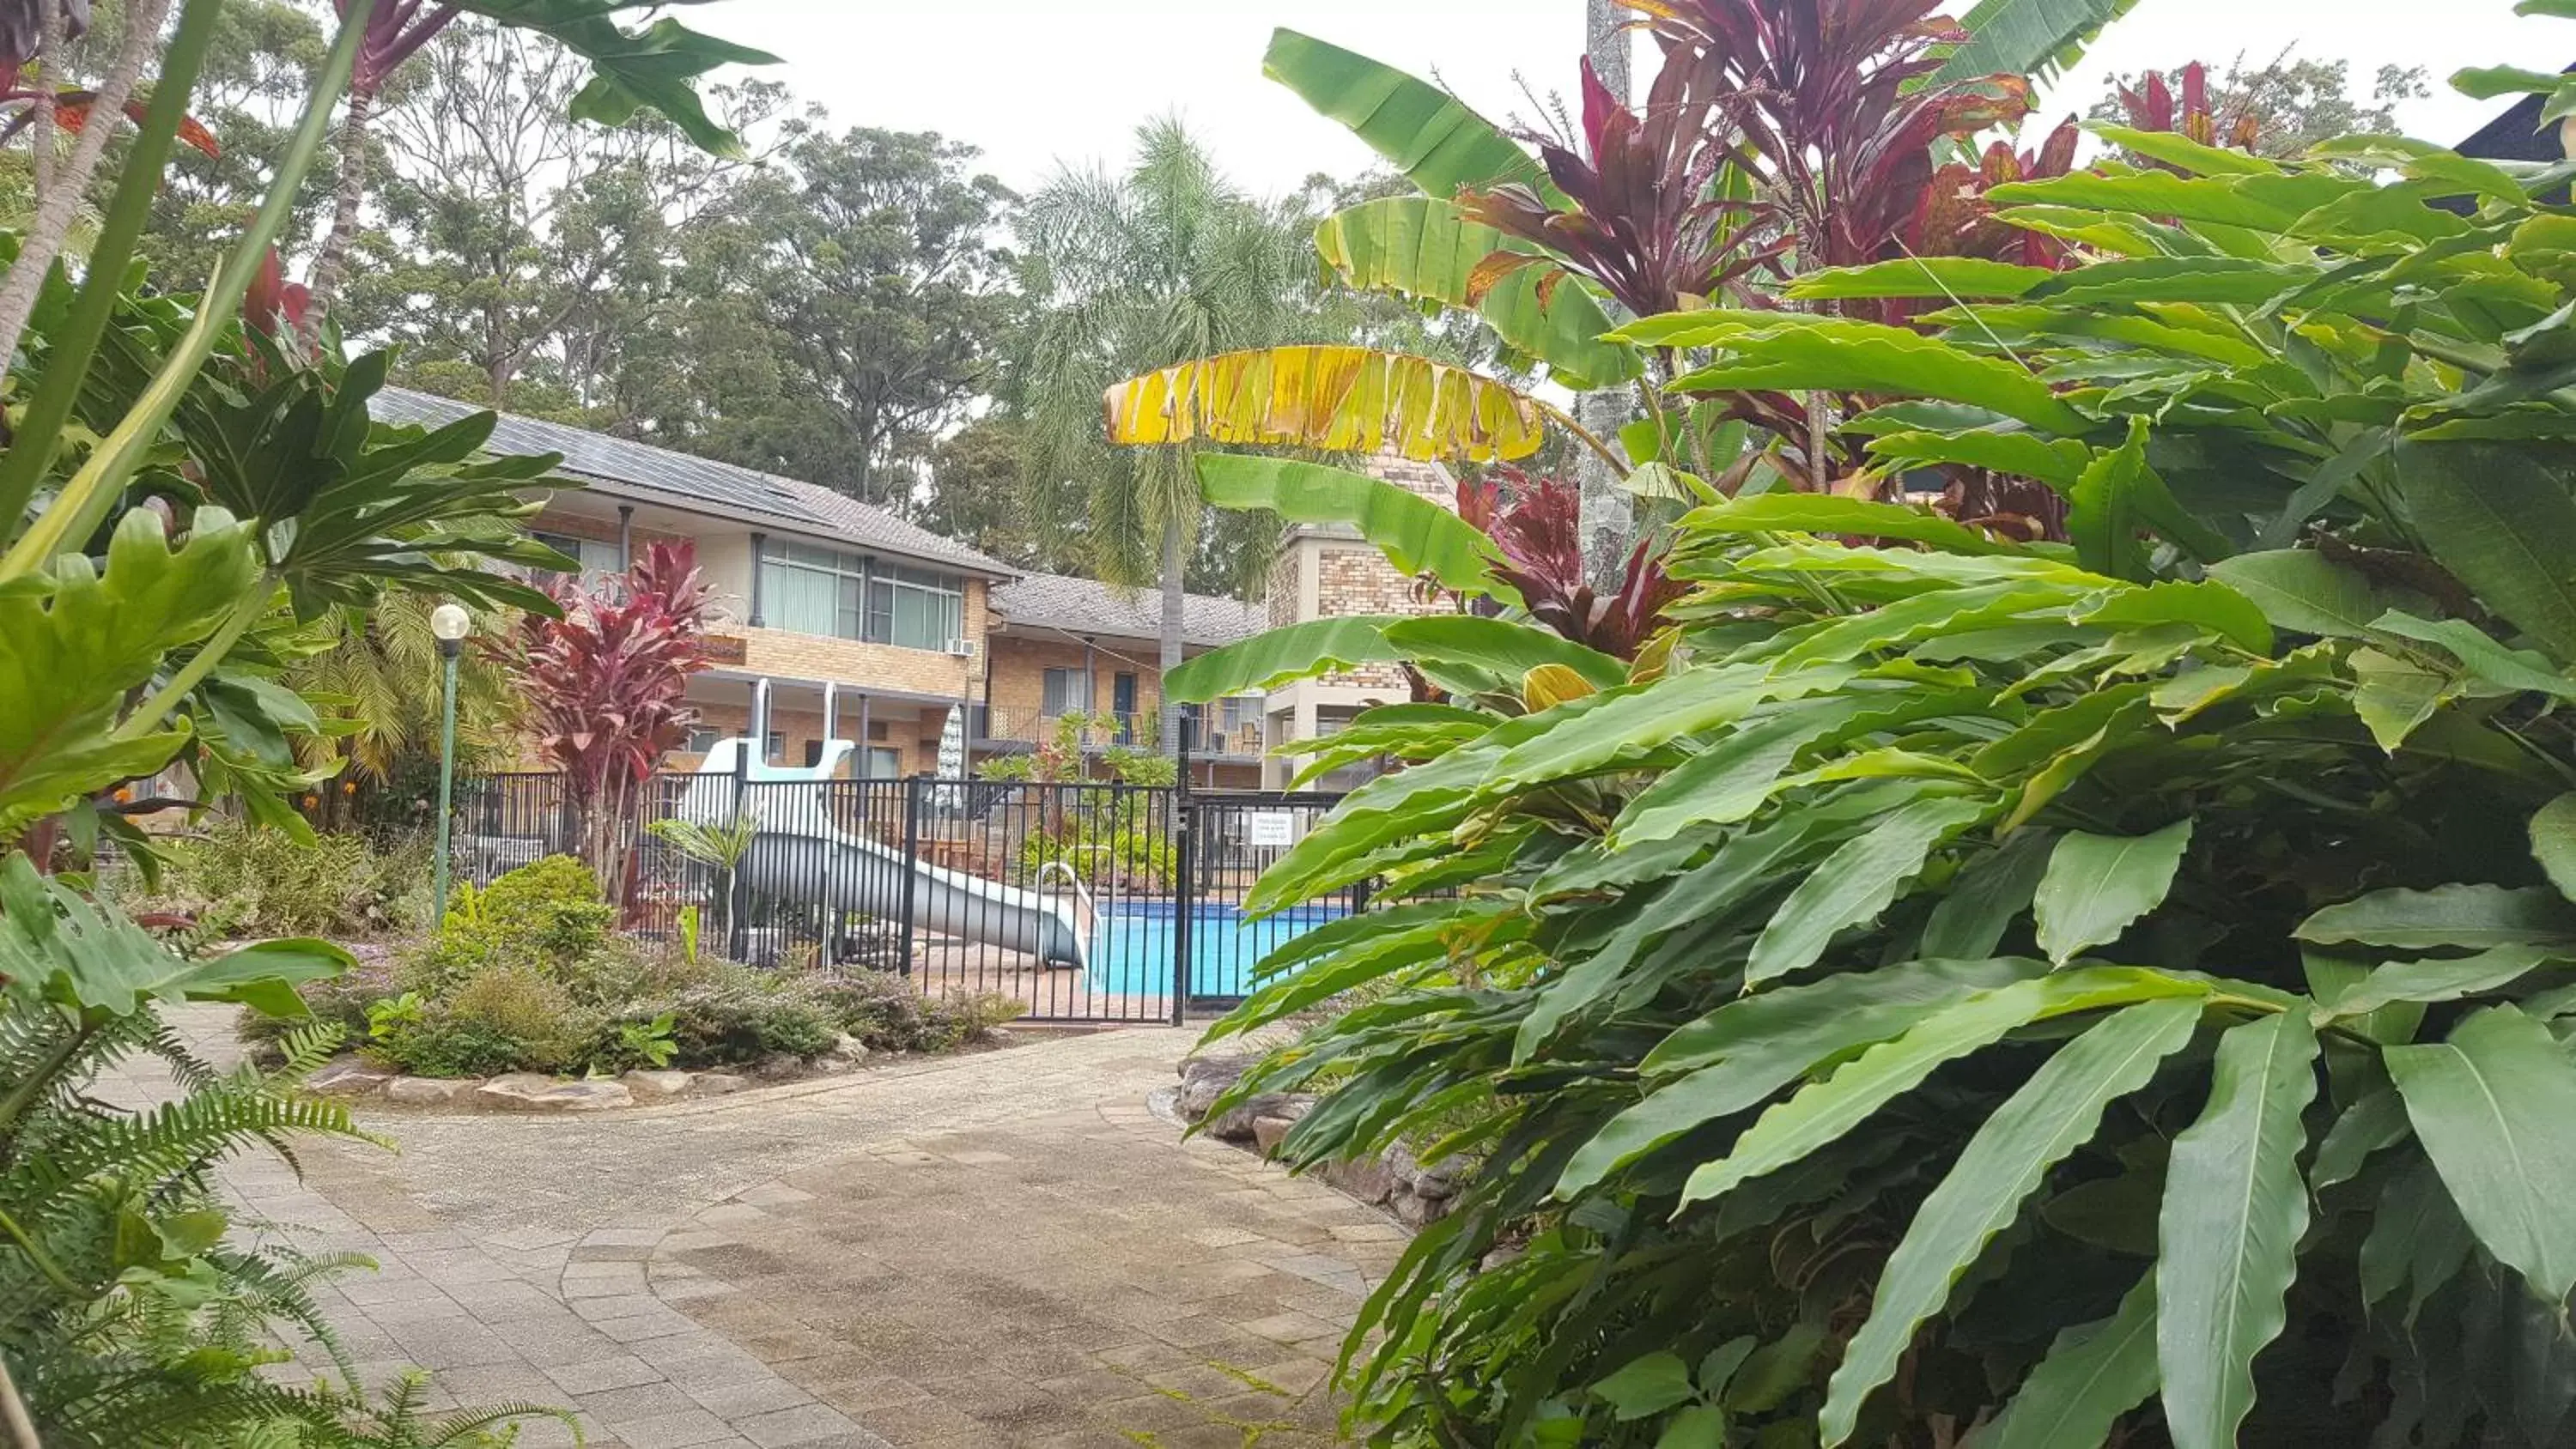 Swimming Pool in Sanctuary Resort Motor Inn